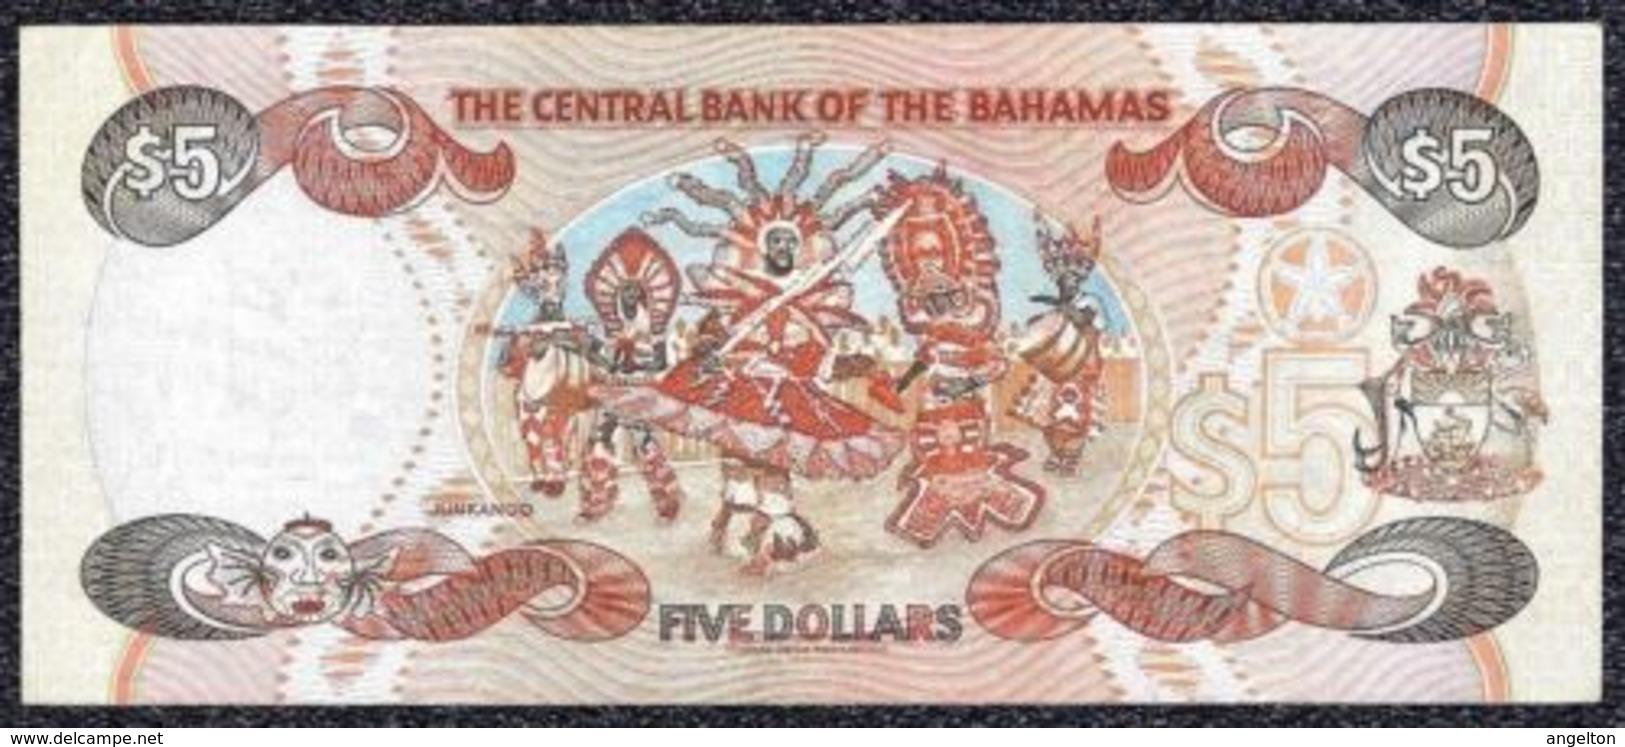 Bahamas 5 Dollars 1997 VF+ - XF Note - Bahamas